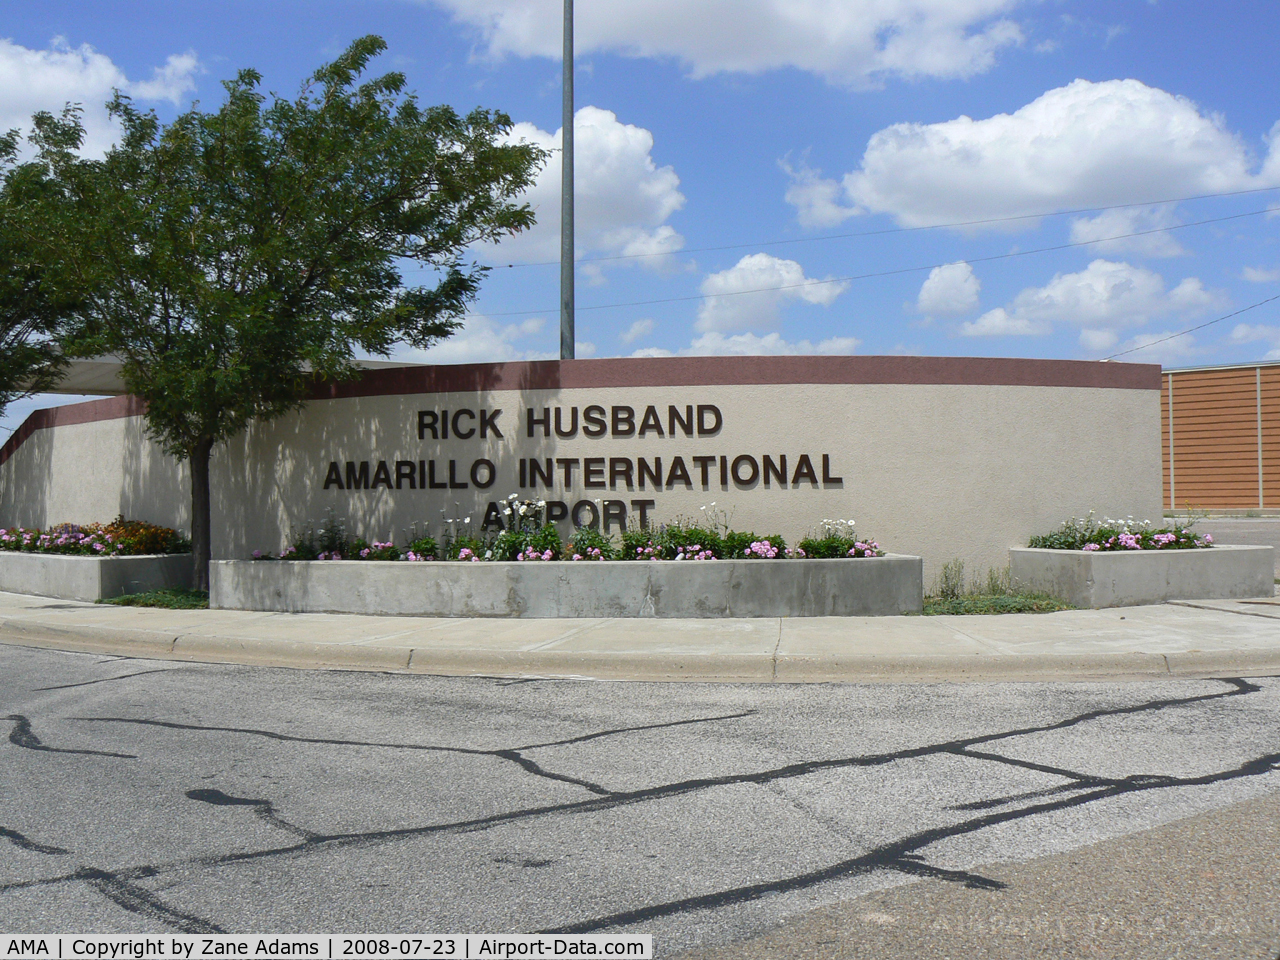 Rick Husband Amarillo International Airport (AMA) - Amarillo International - Named after Columbia Astronaut Rick Husband - Lost during re-entry 2003